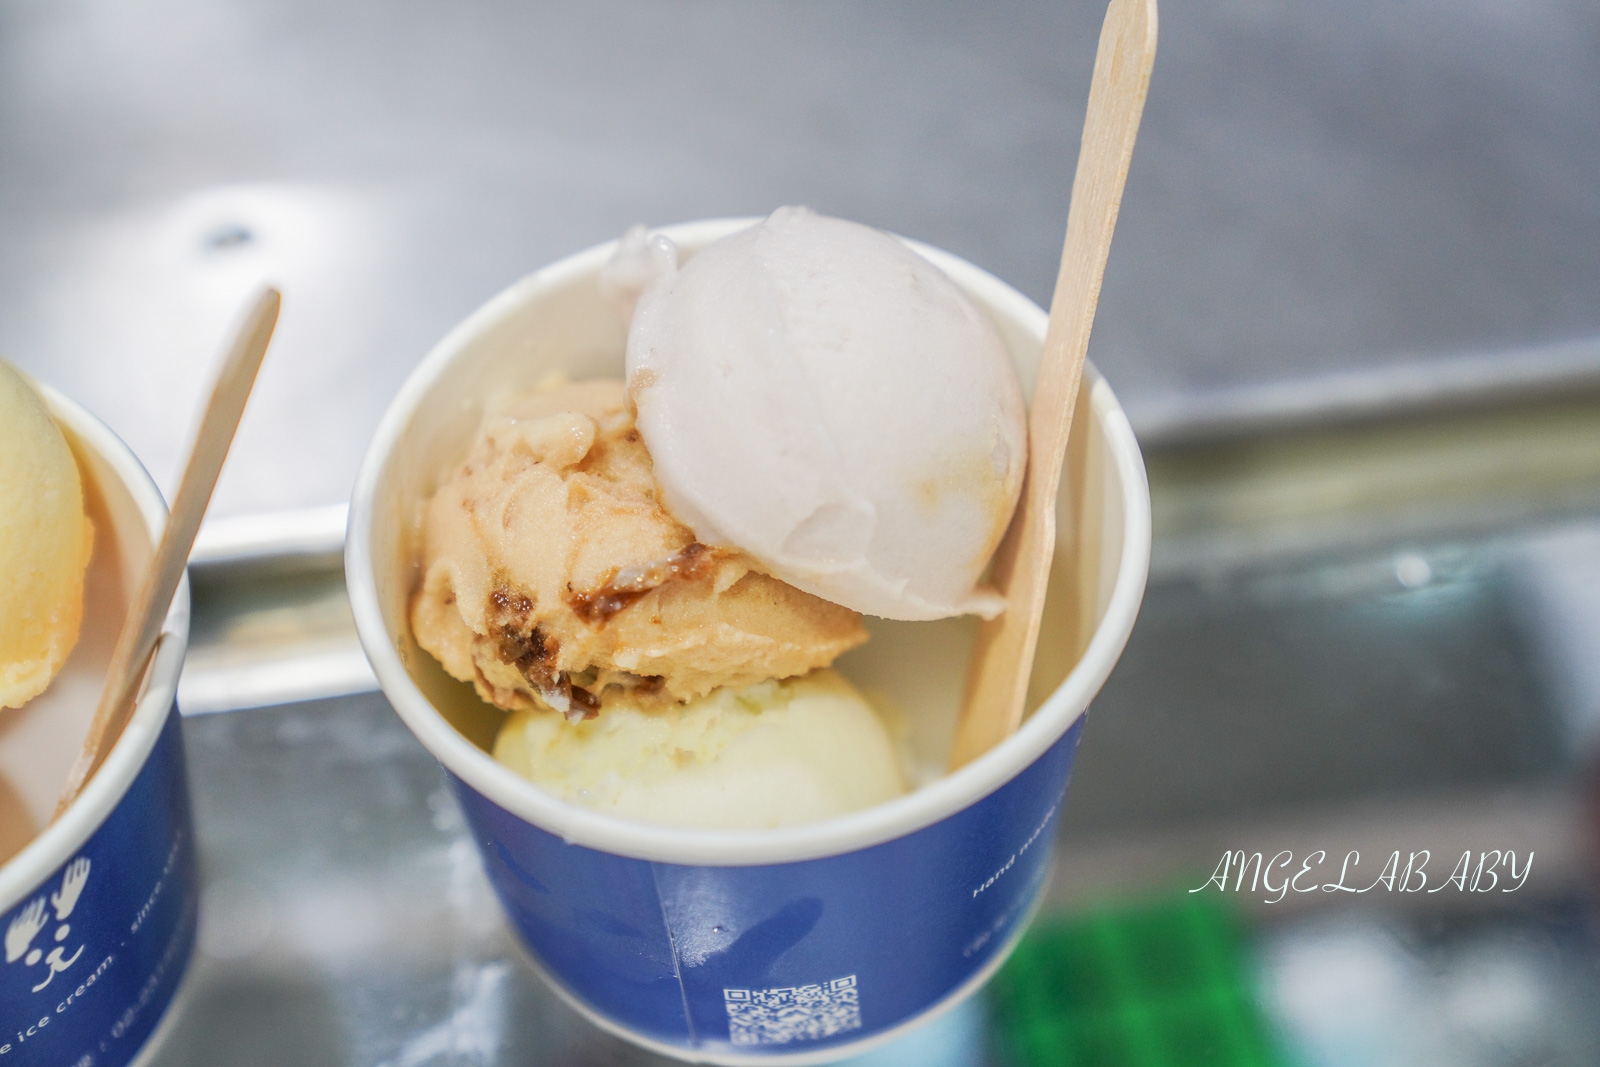 西門冰店｜超過一甲子的古早味手工冰淇淋『永富冰淇淋』菜單價格、冰淇淋蛋糕 @梅格(Angelababy)享樂日記